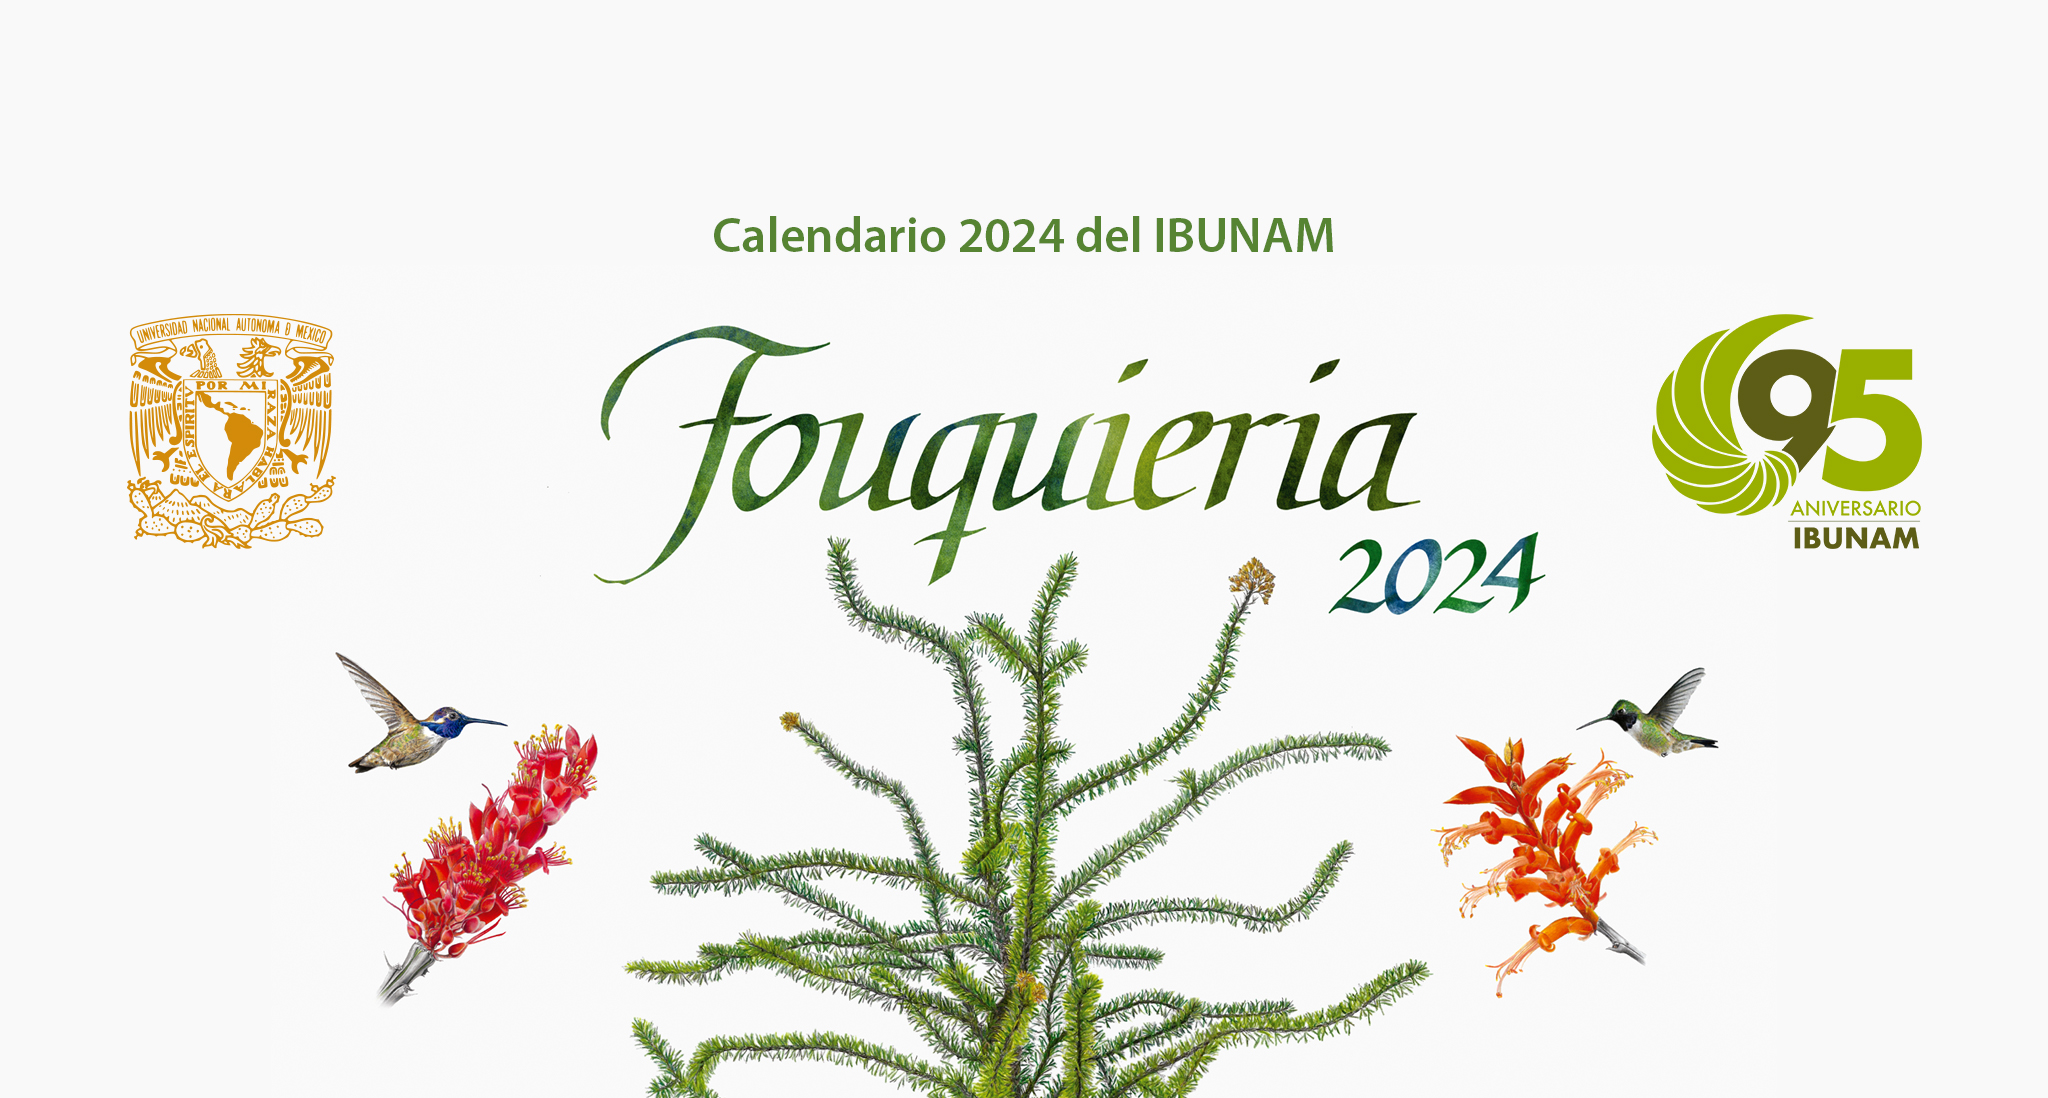 Calendario 2024 del IBUNAM